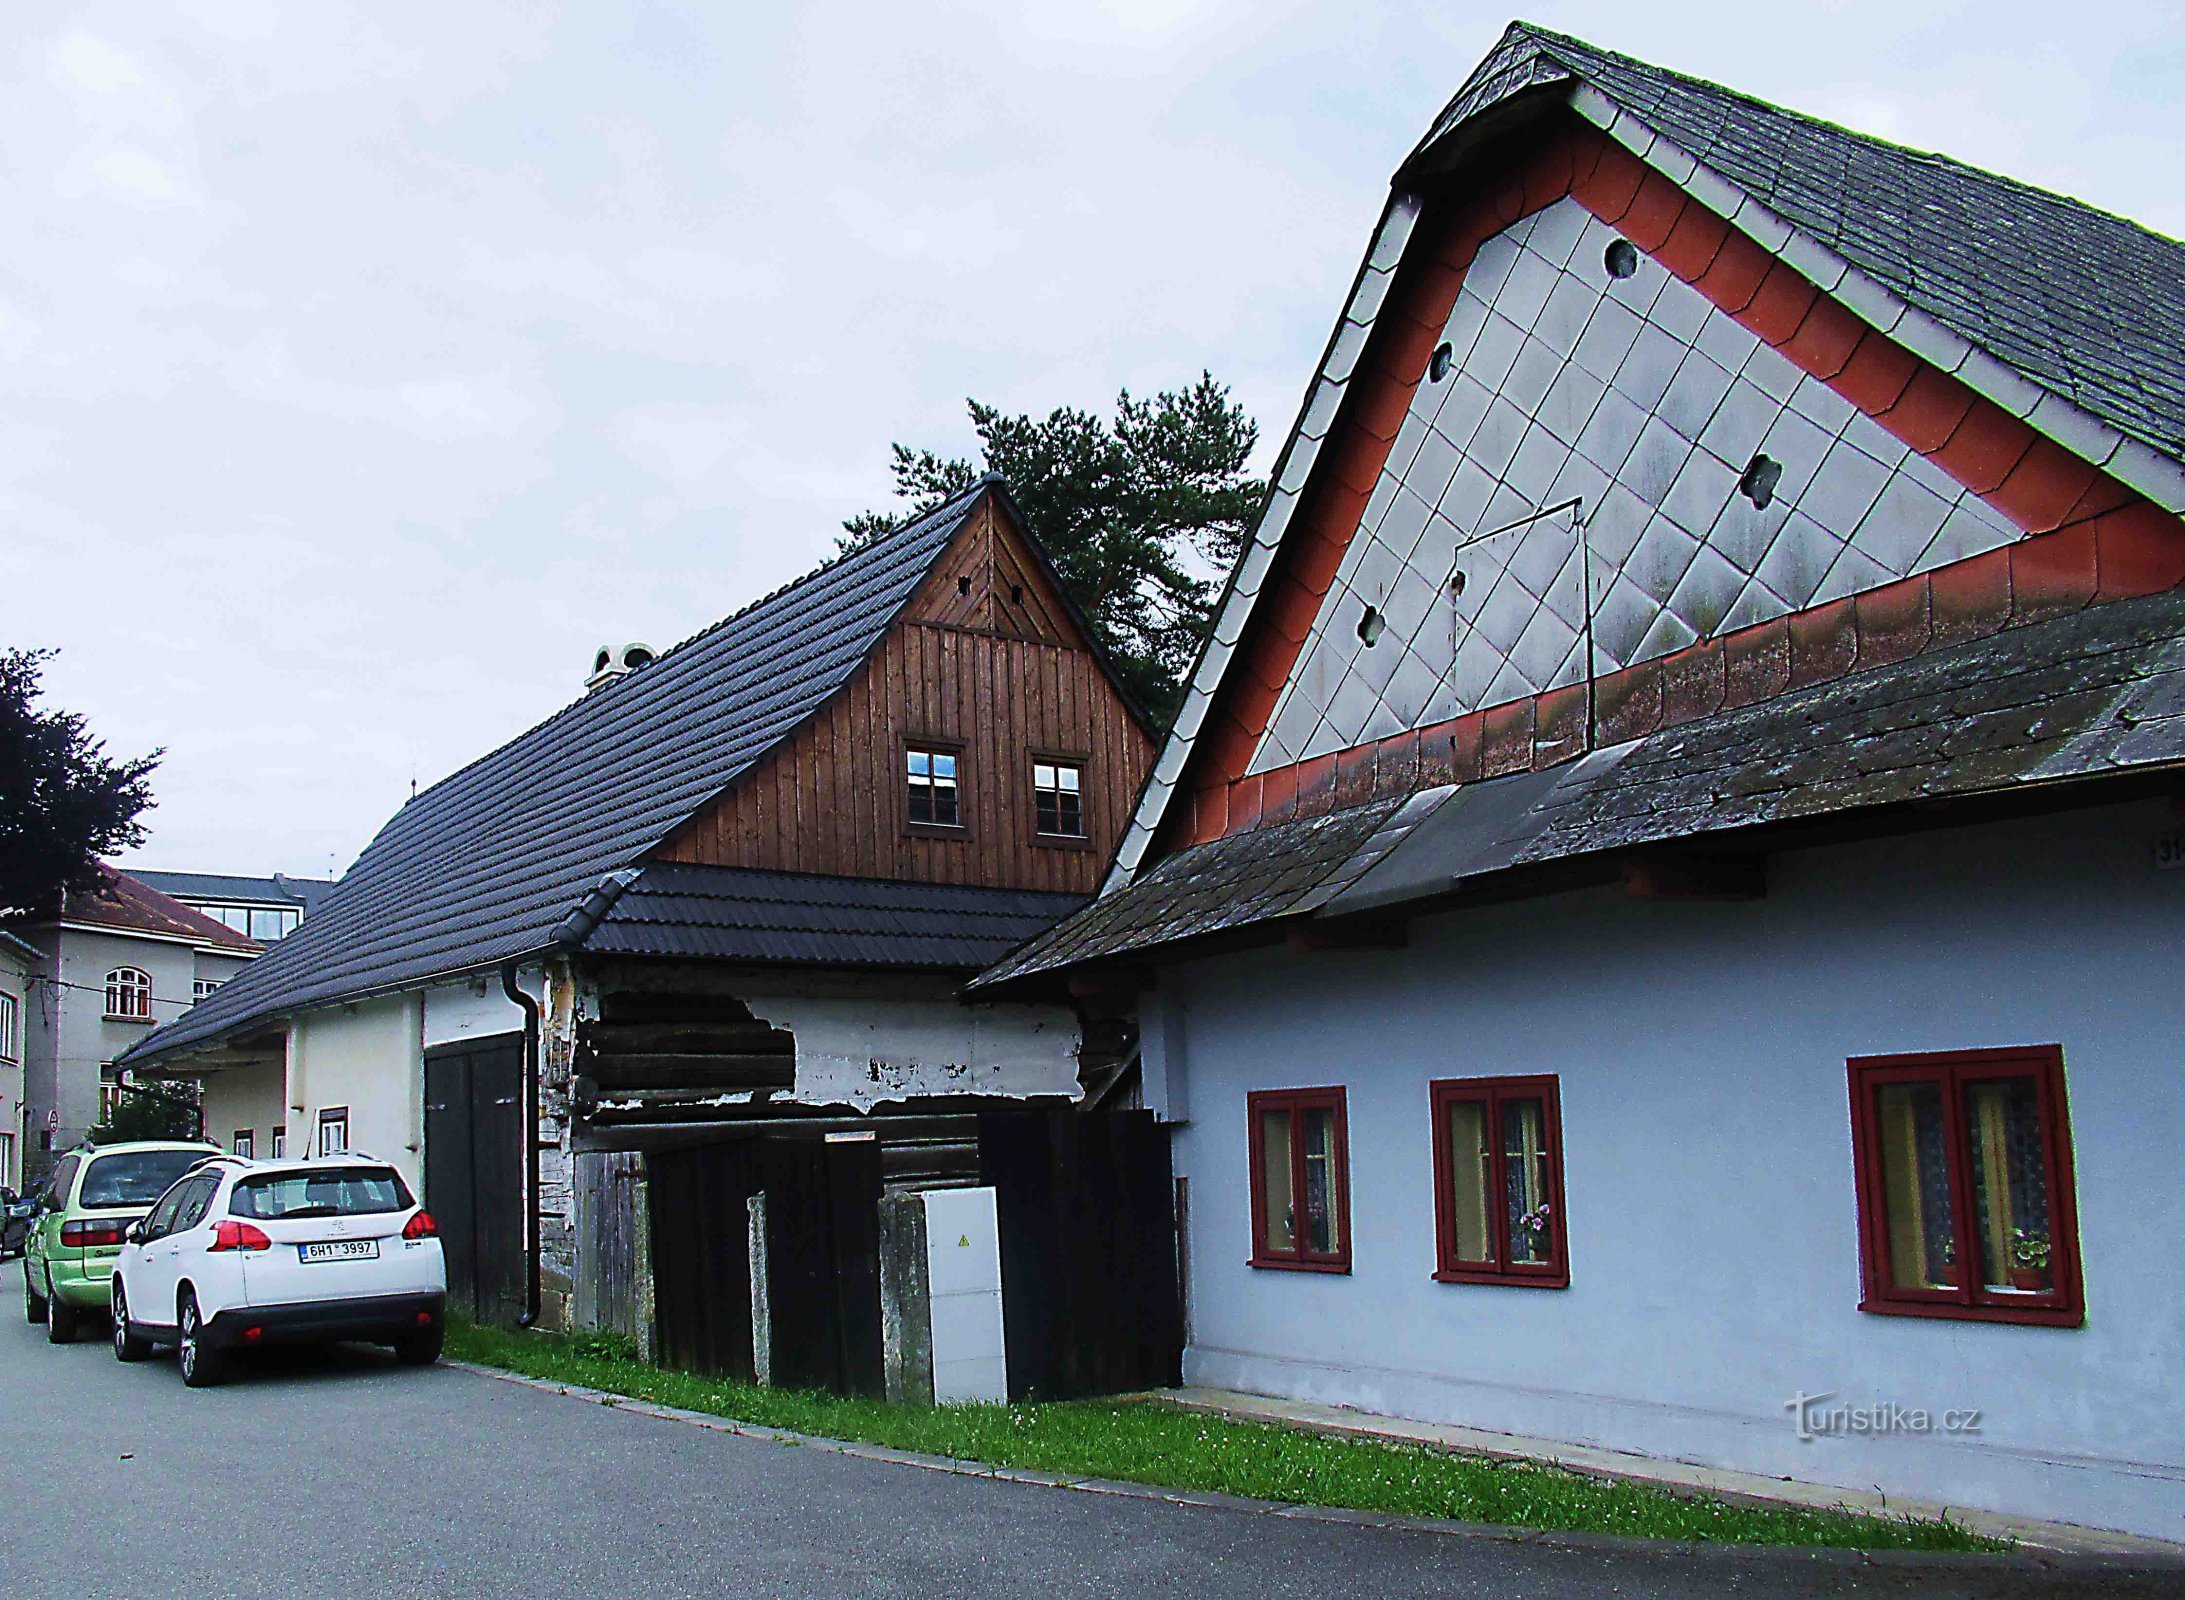 Casas do tecelão - edifícios folclóricos do século XIX em Ústí nad Orlicí